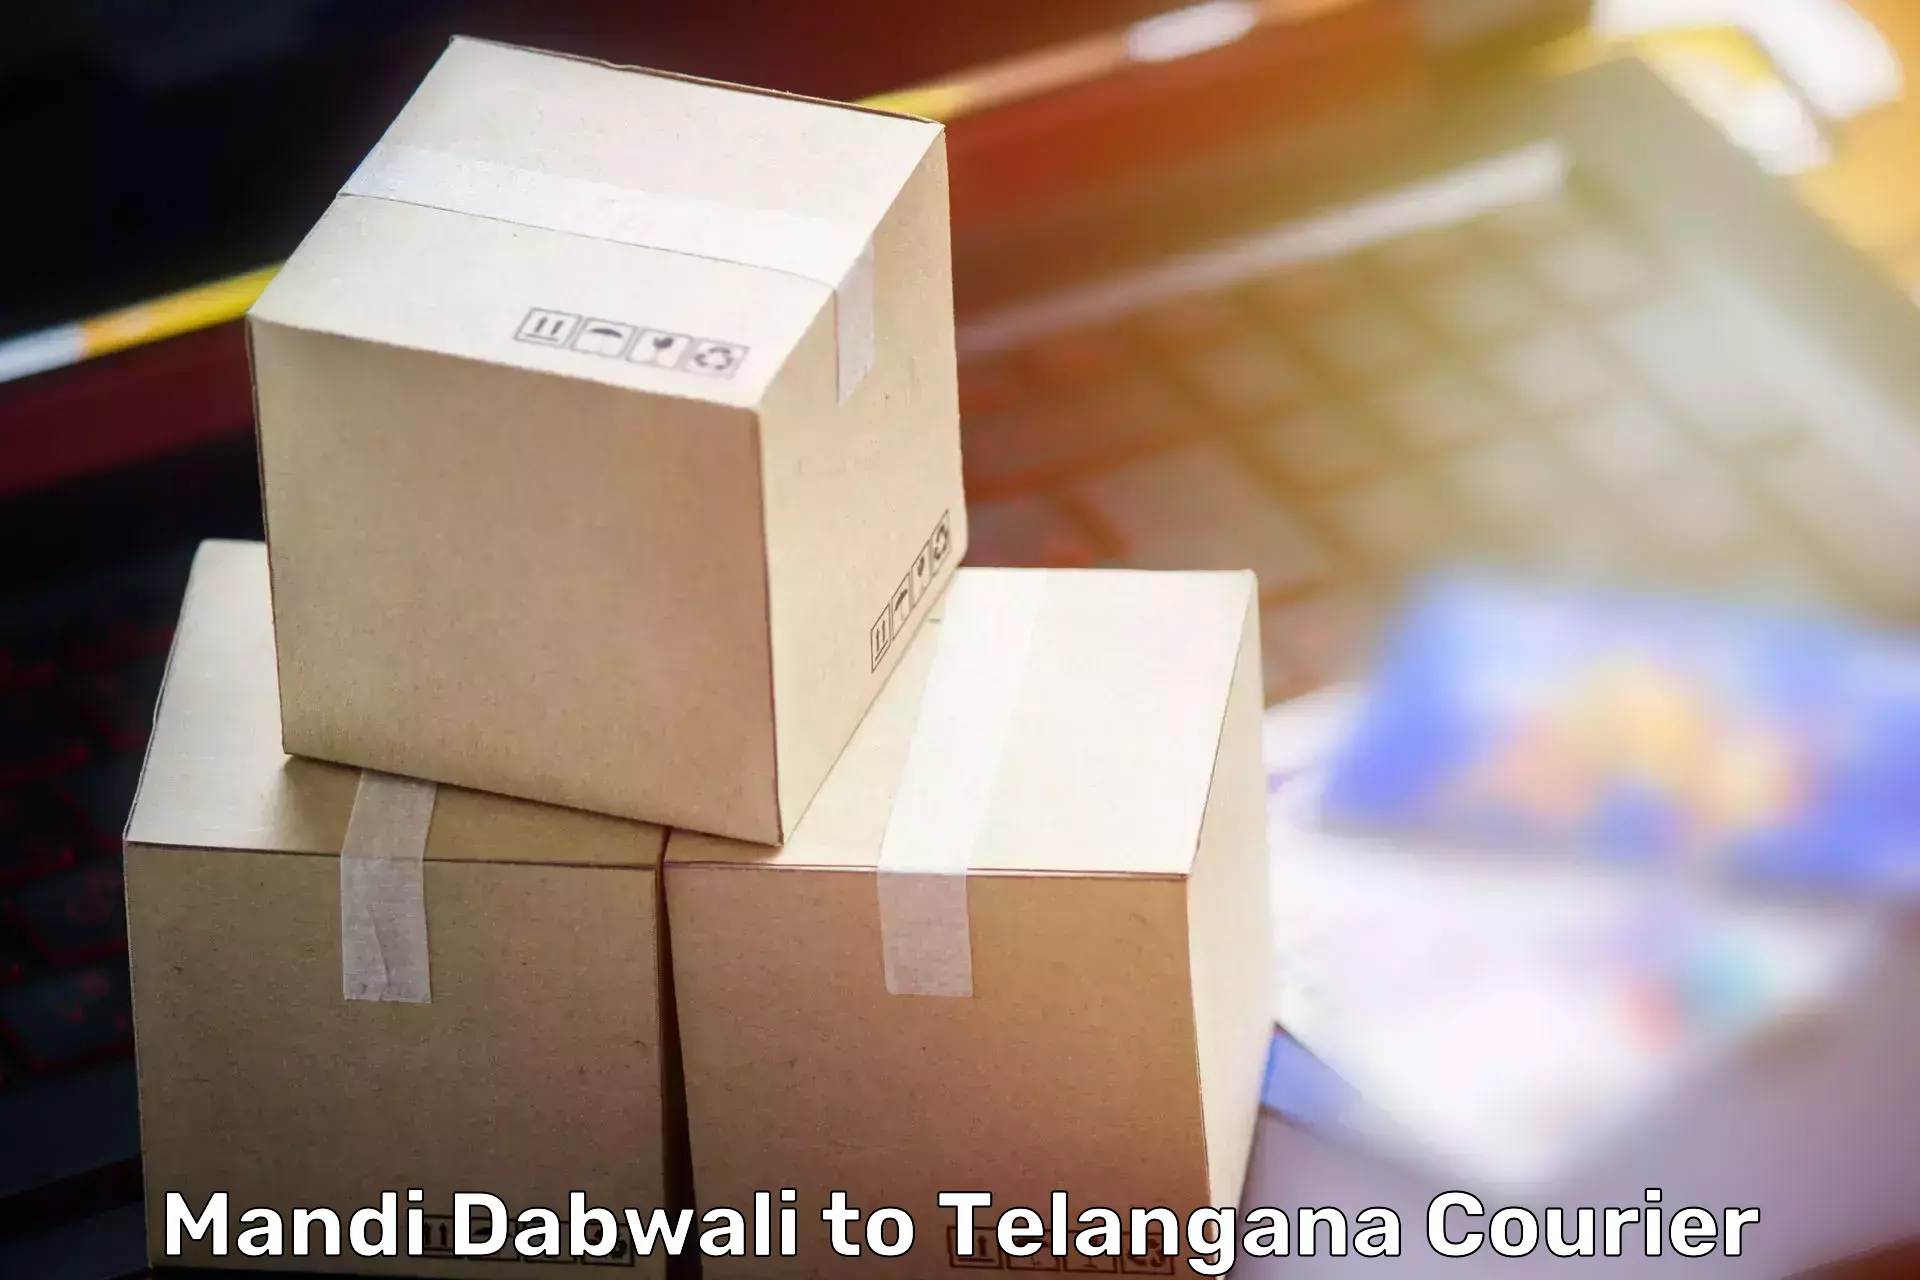 Professional movers in Mandi Dabwali to Narayanpet